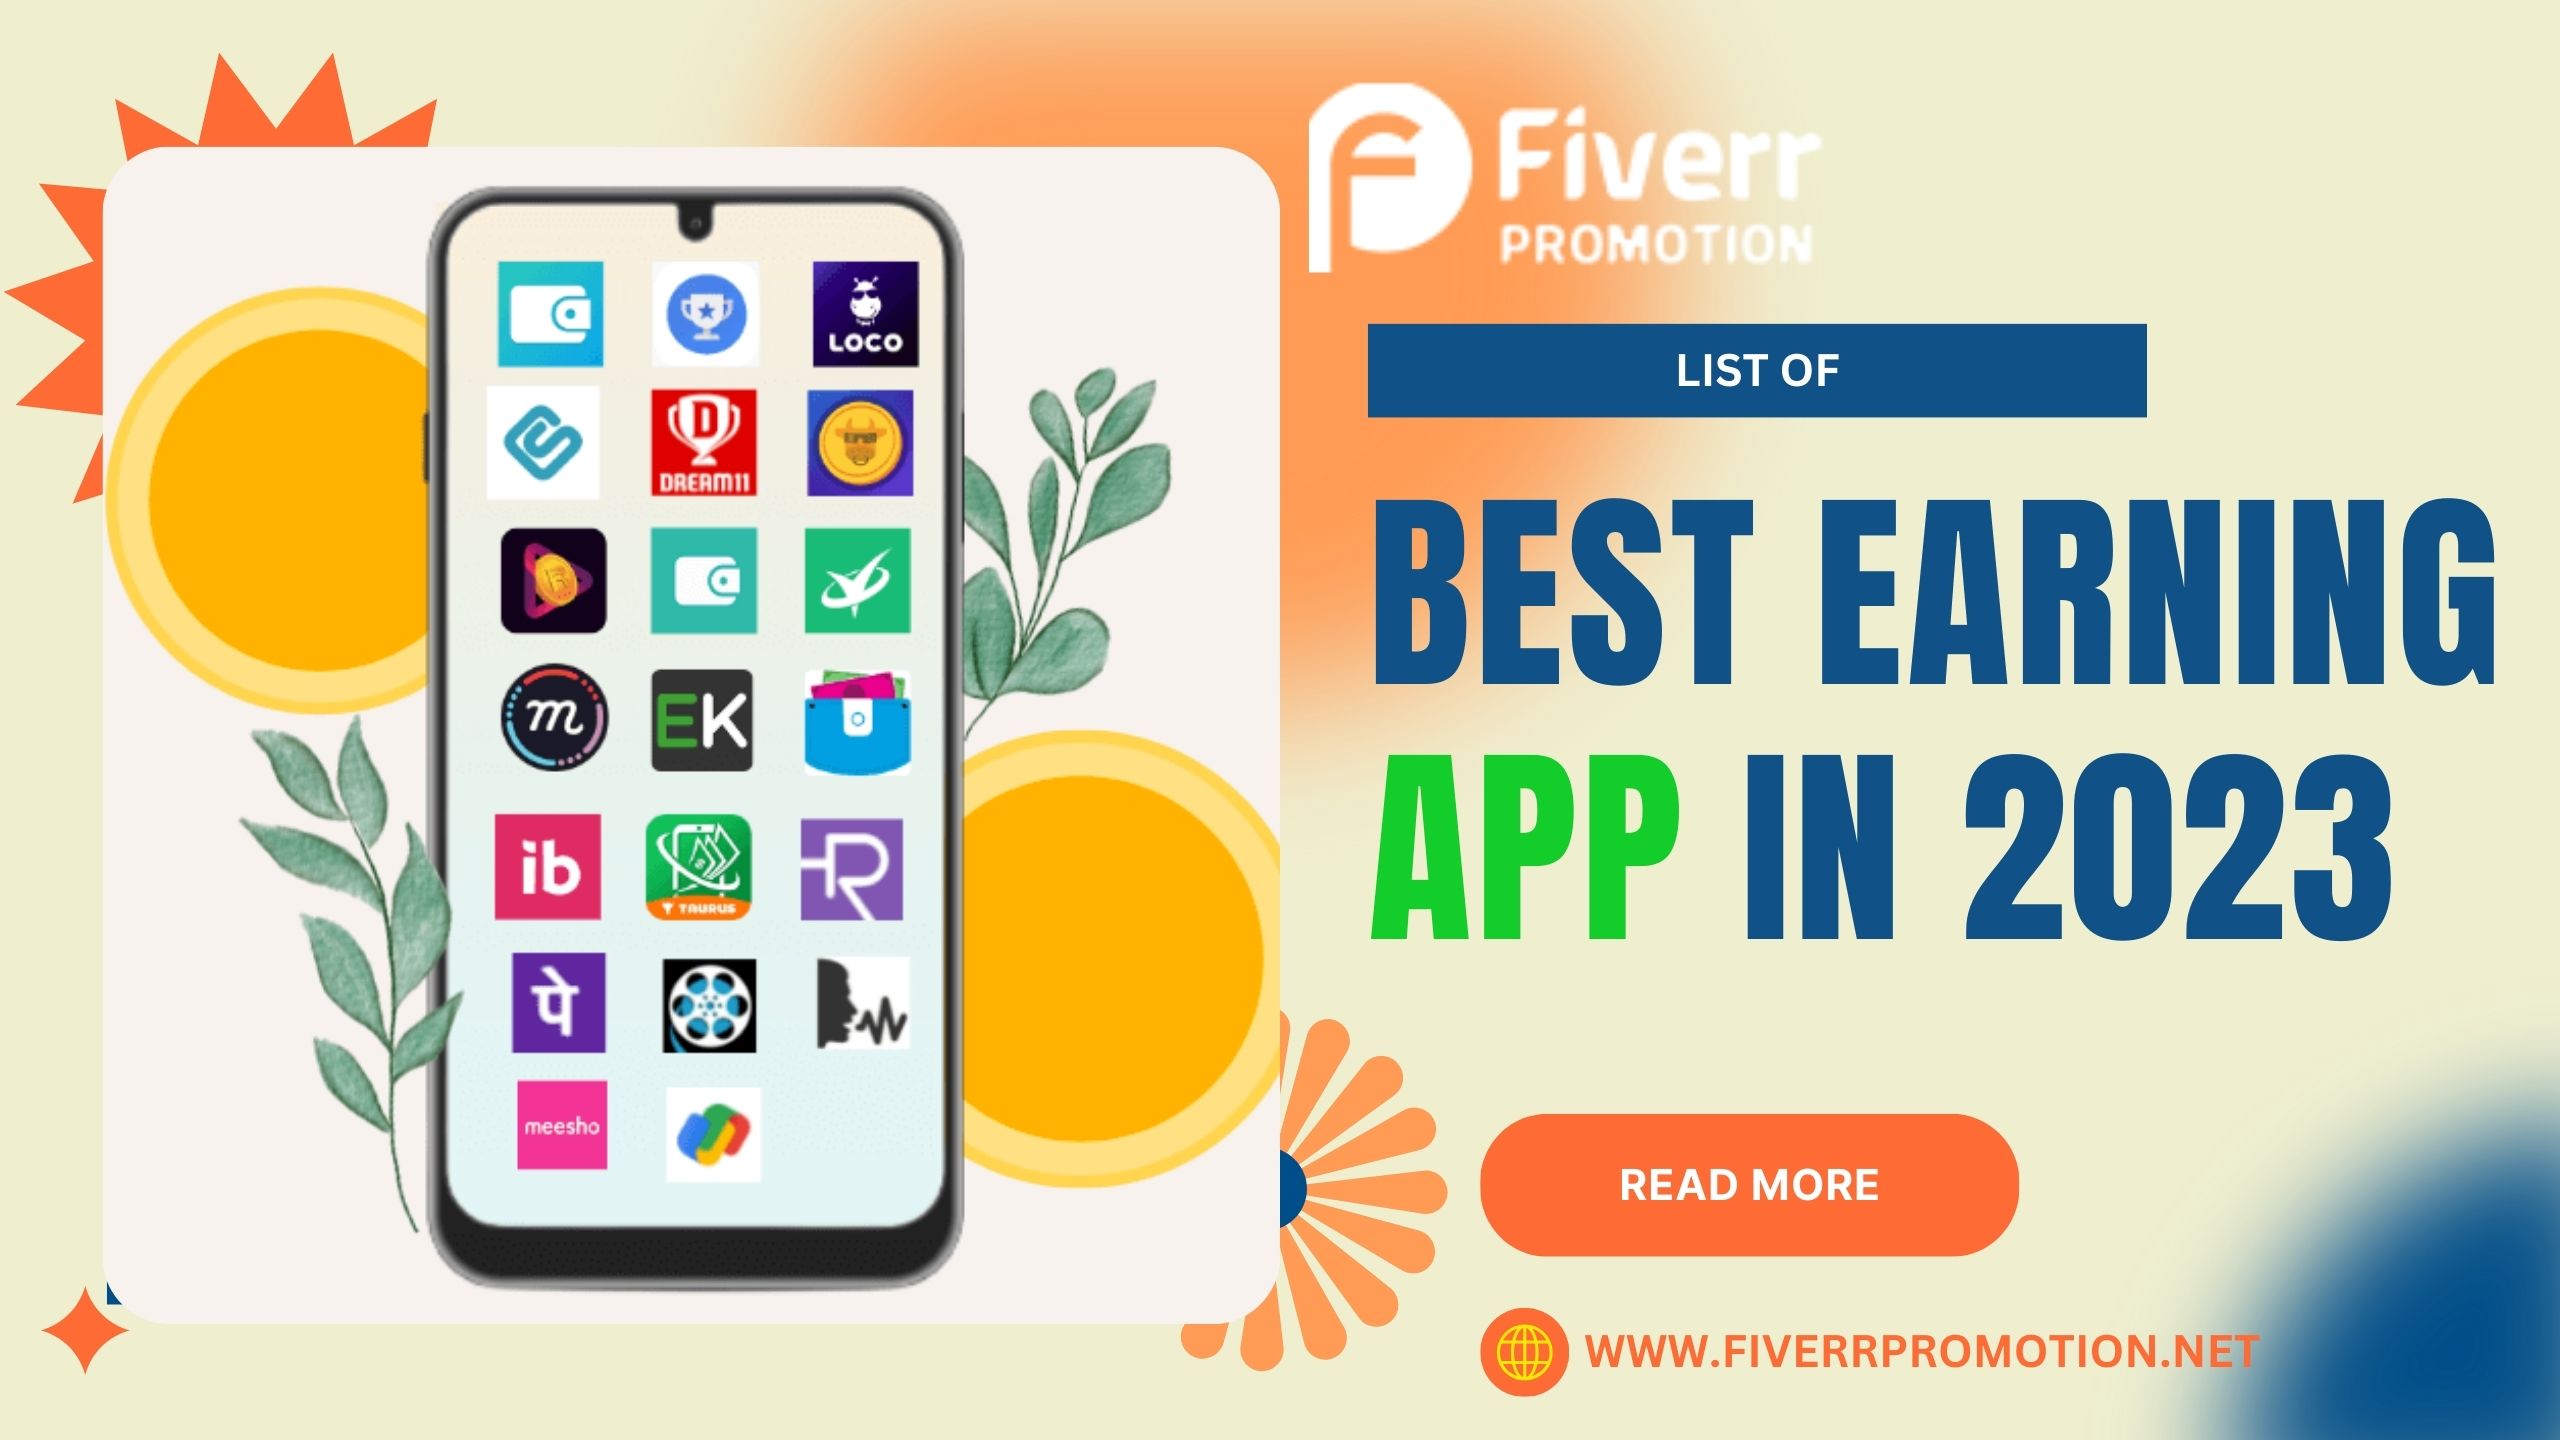 List of best earning app in 2023